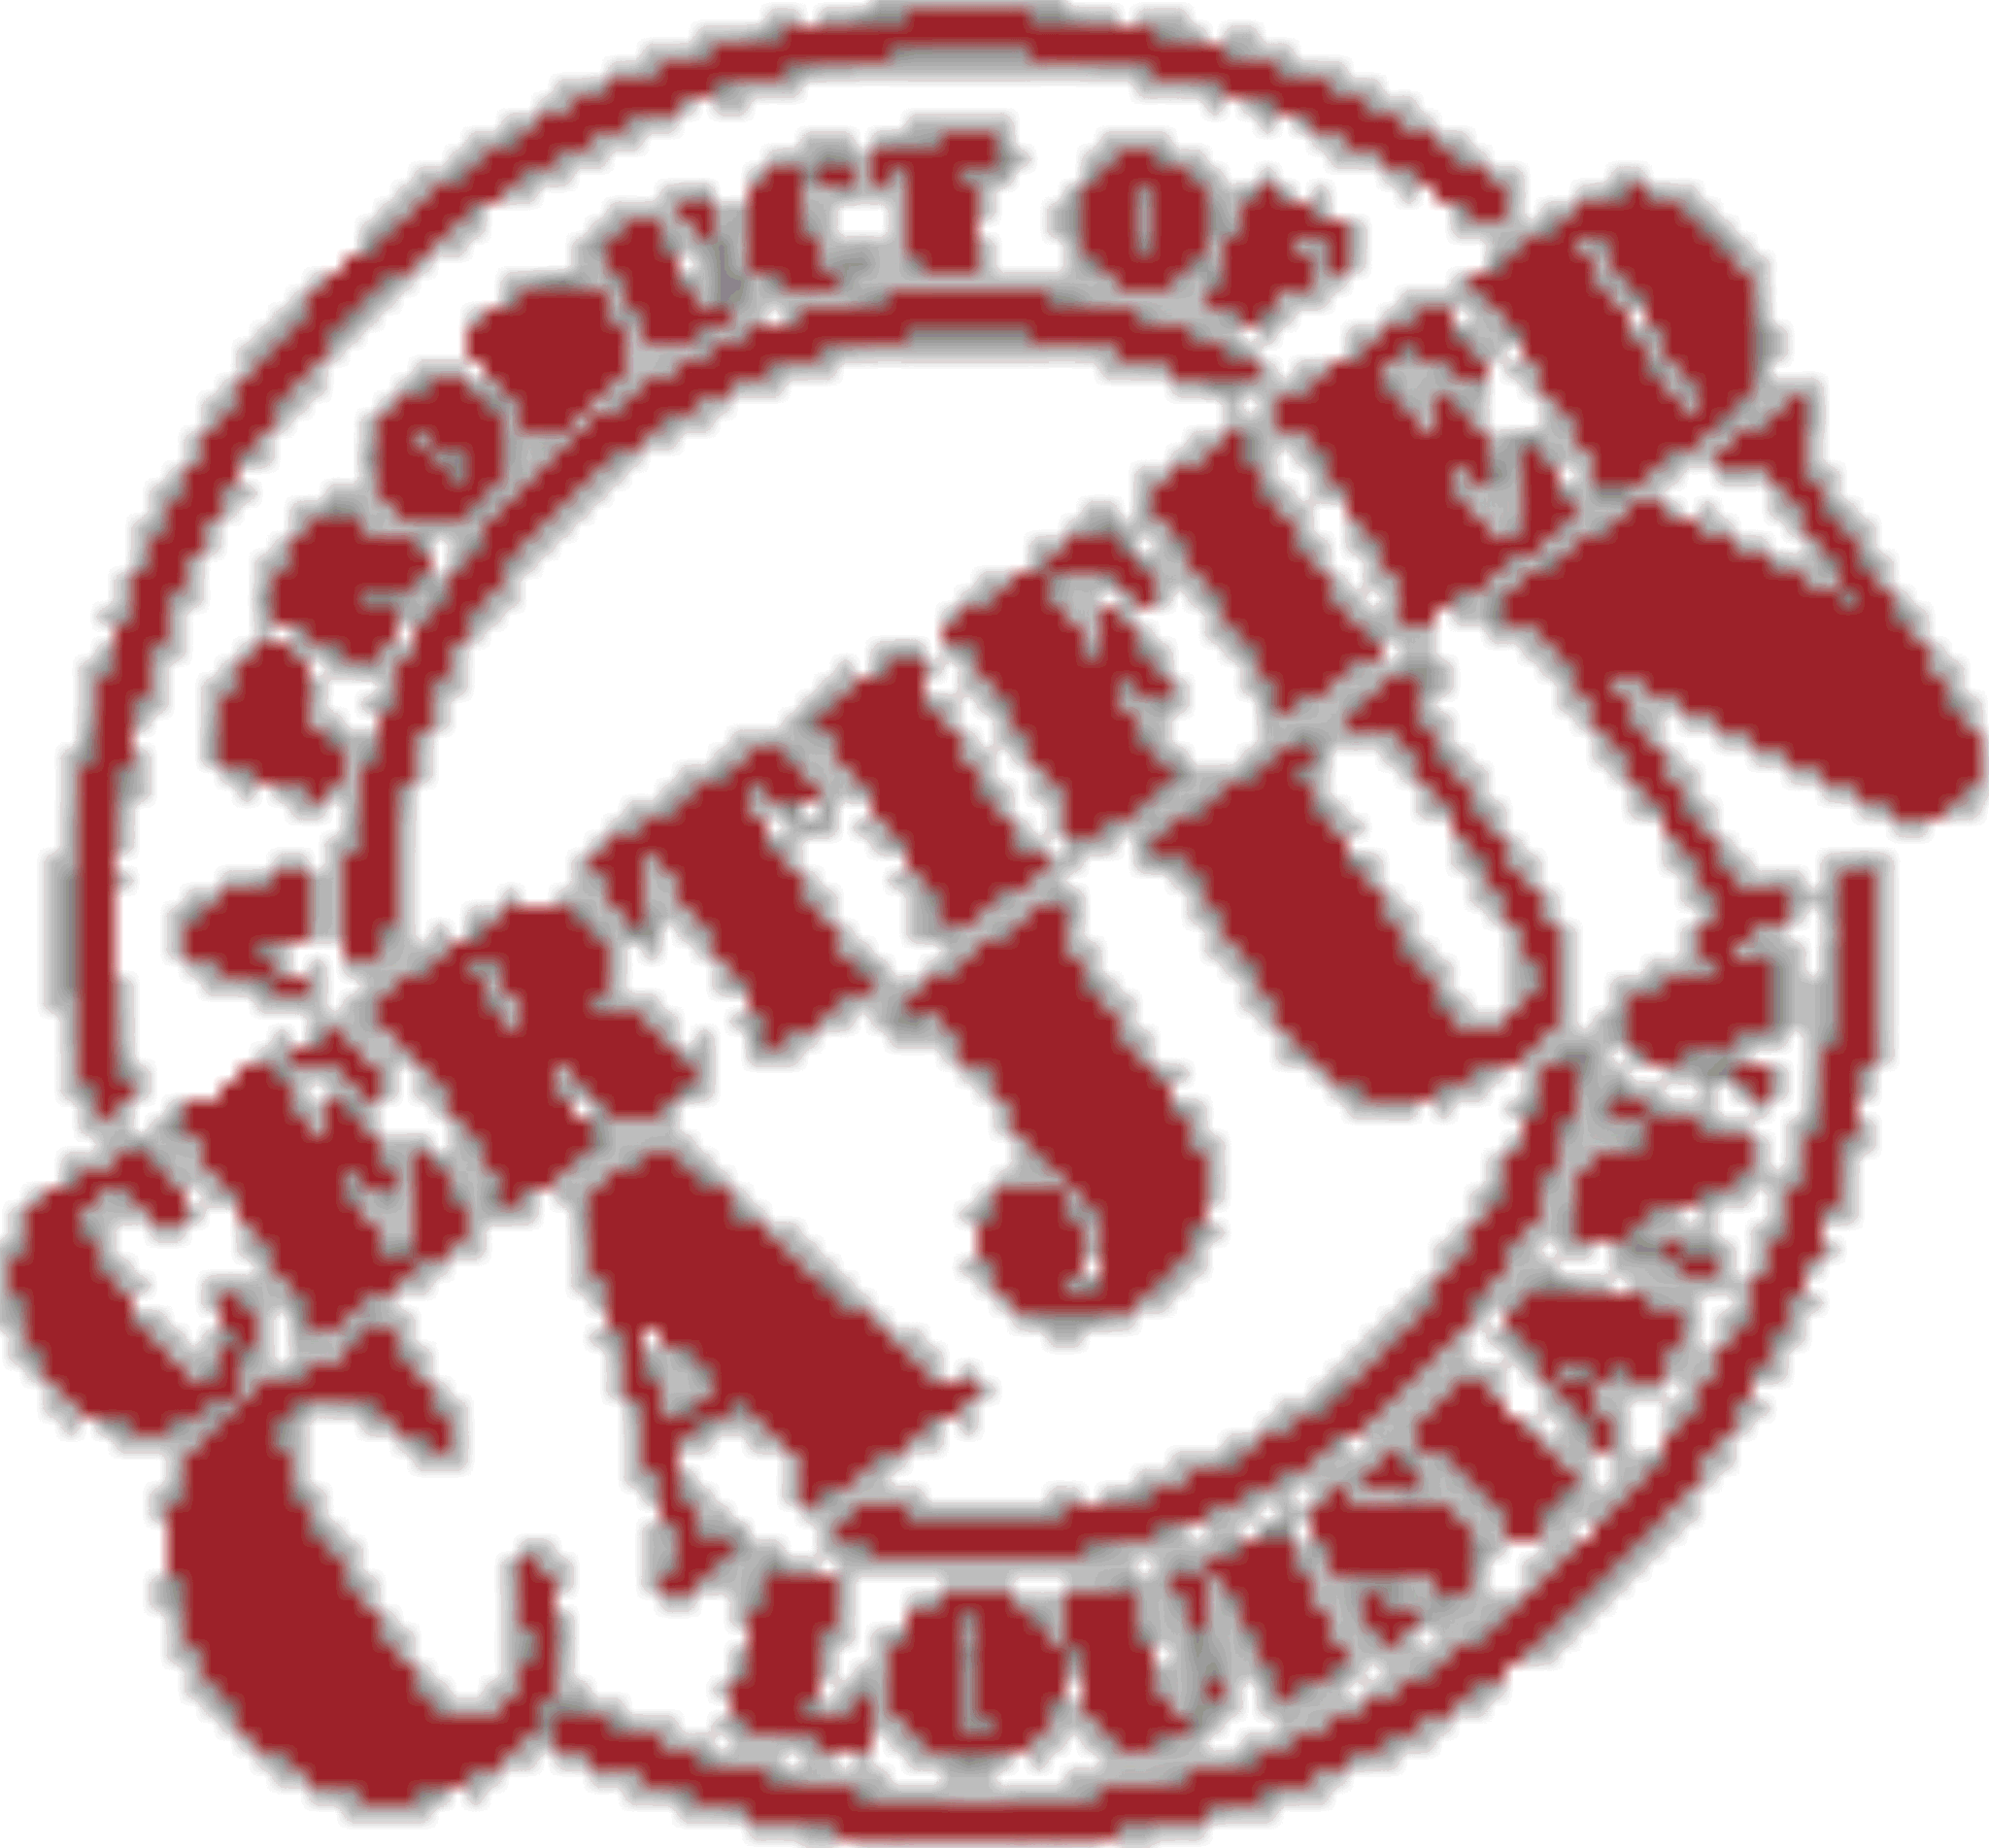 gator clipart logo